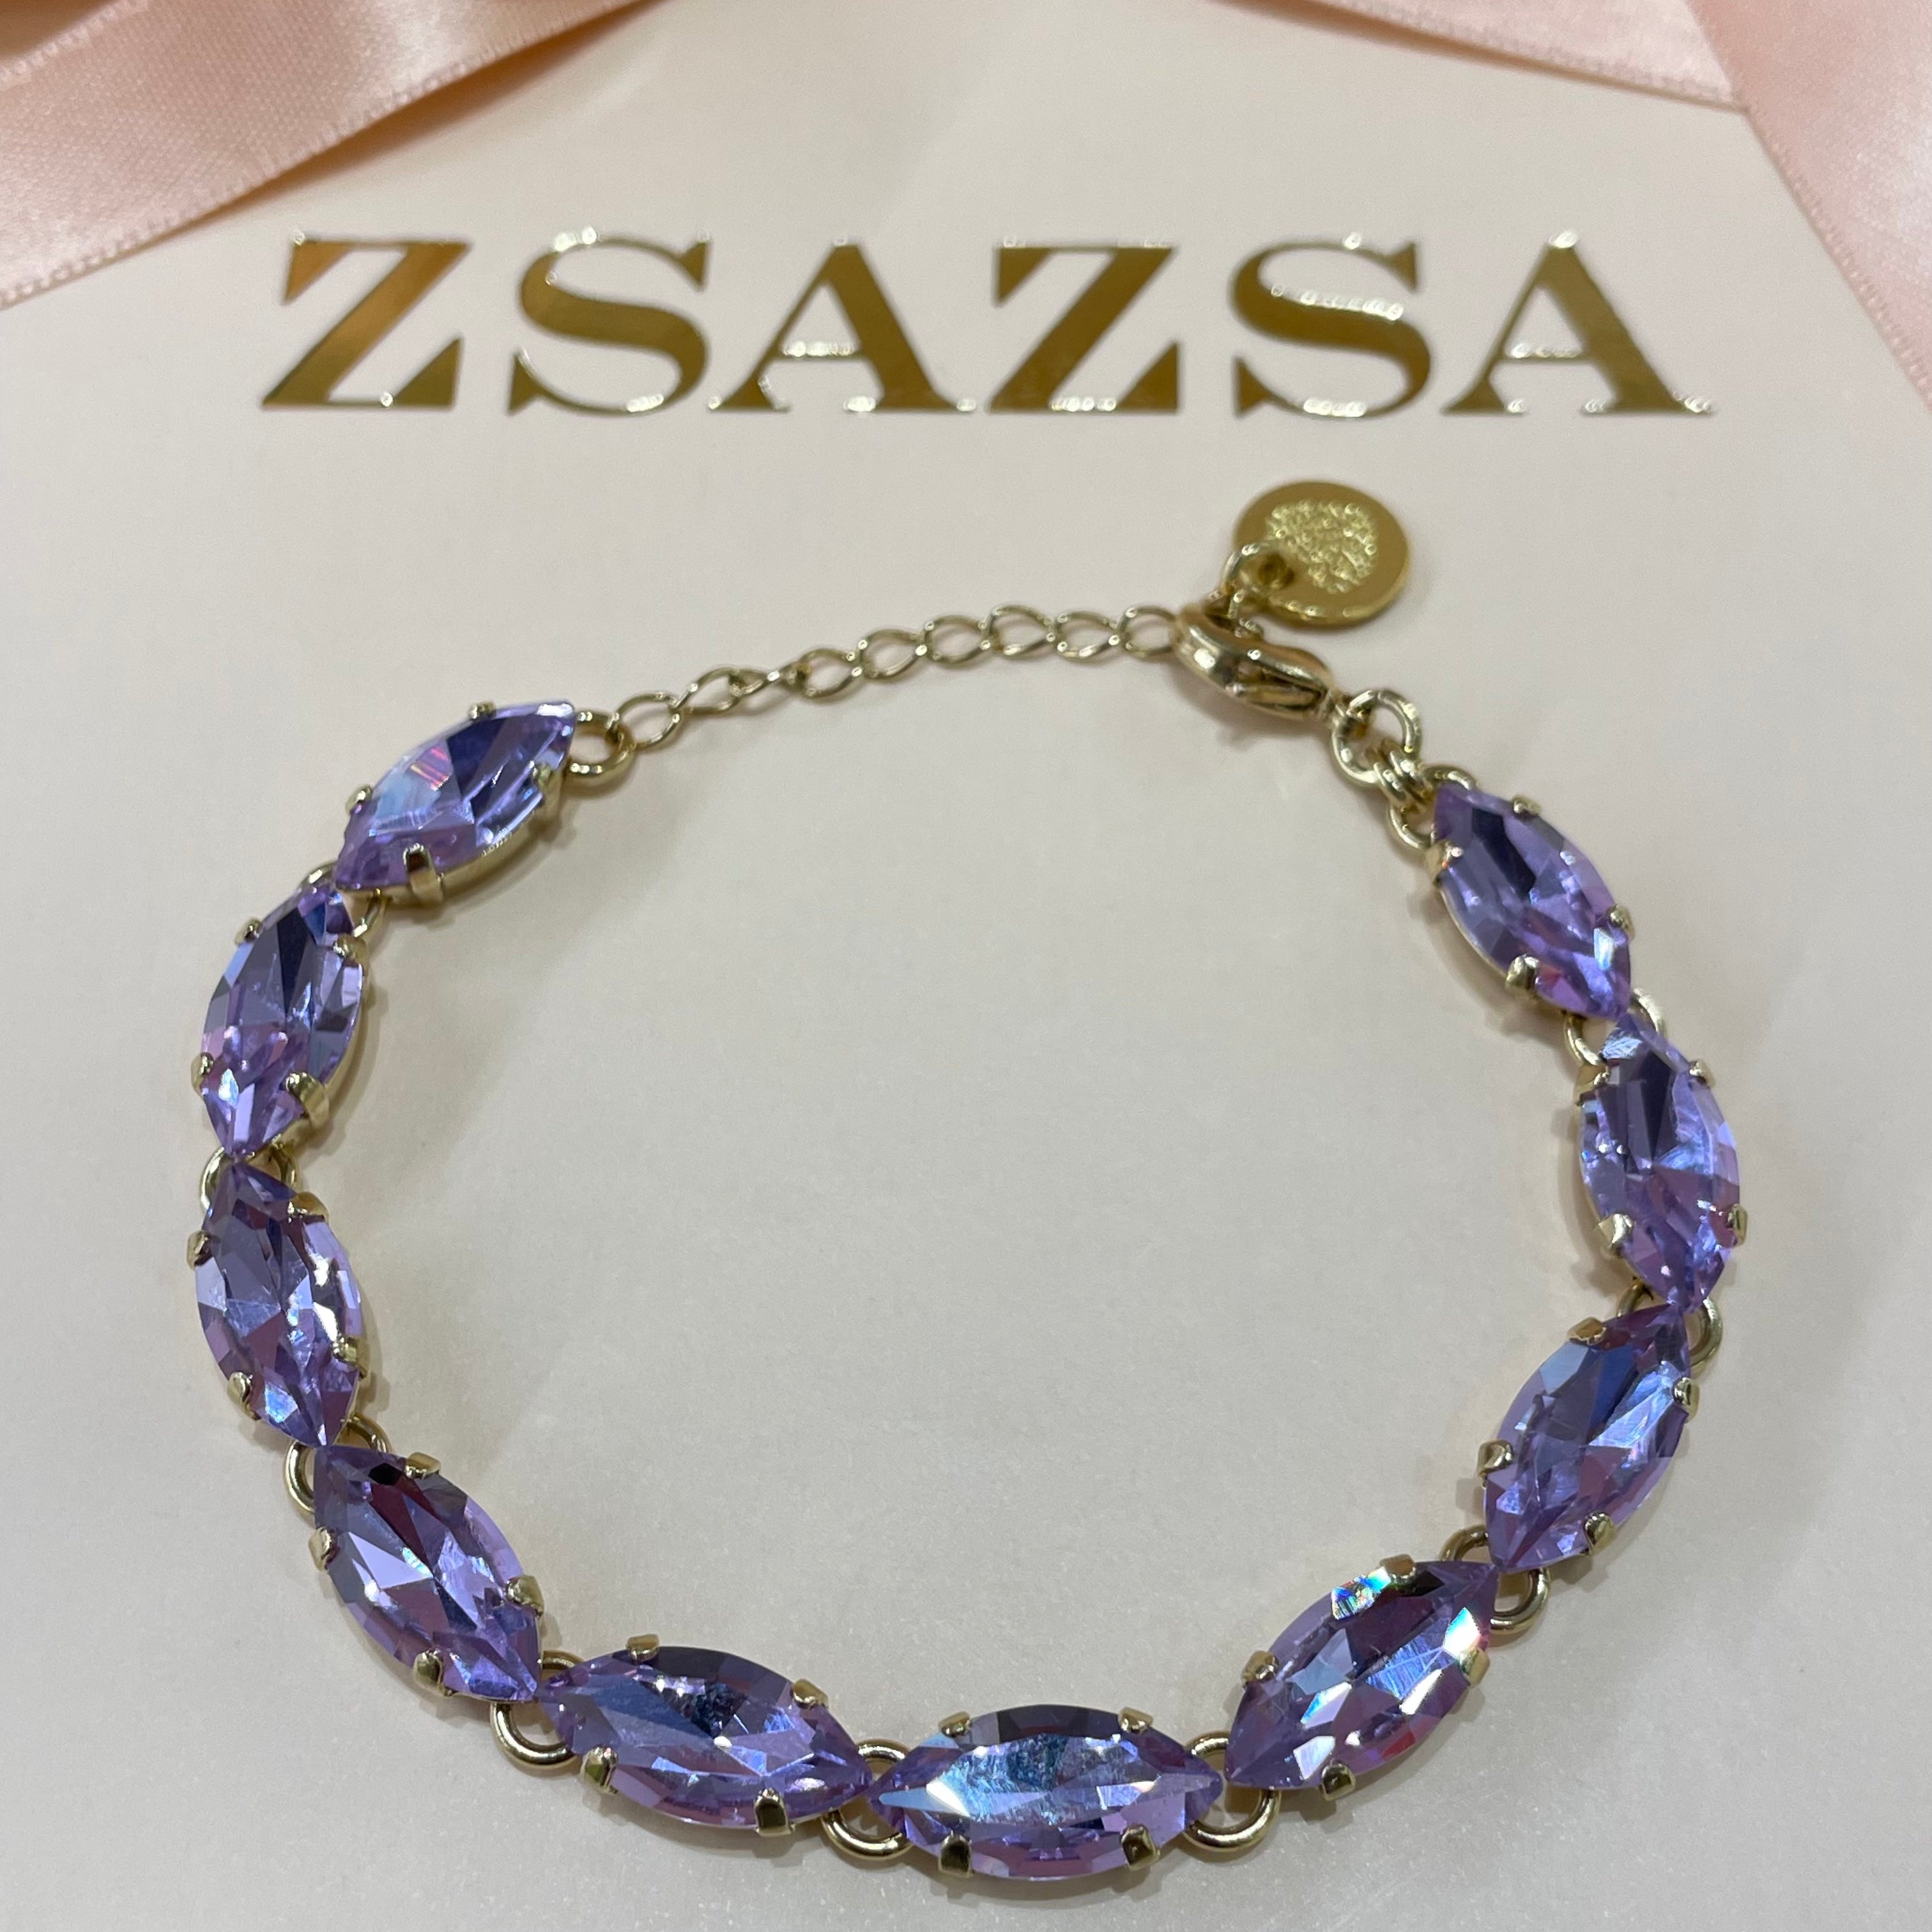 Lilac bracelet